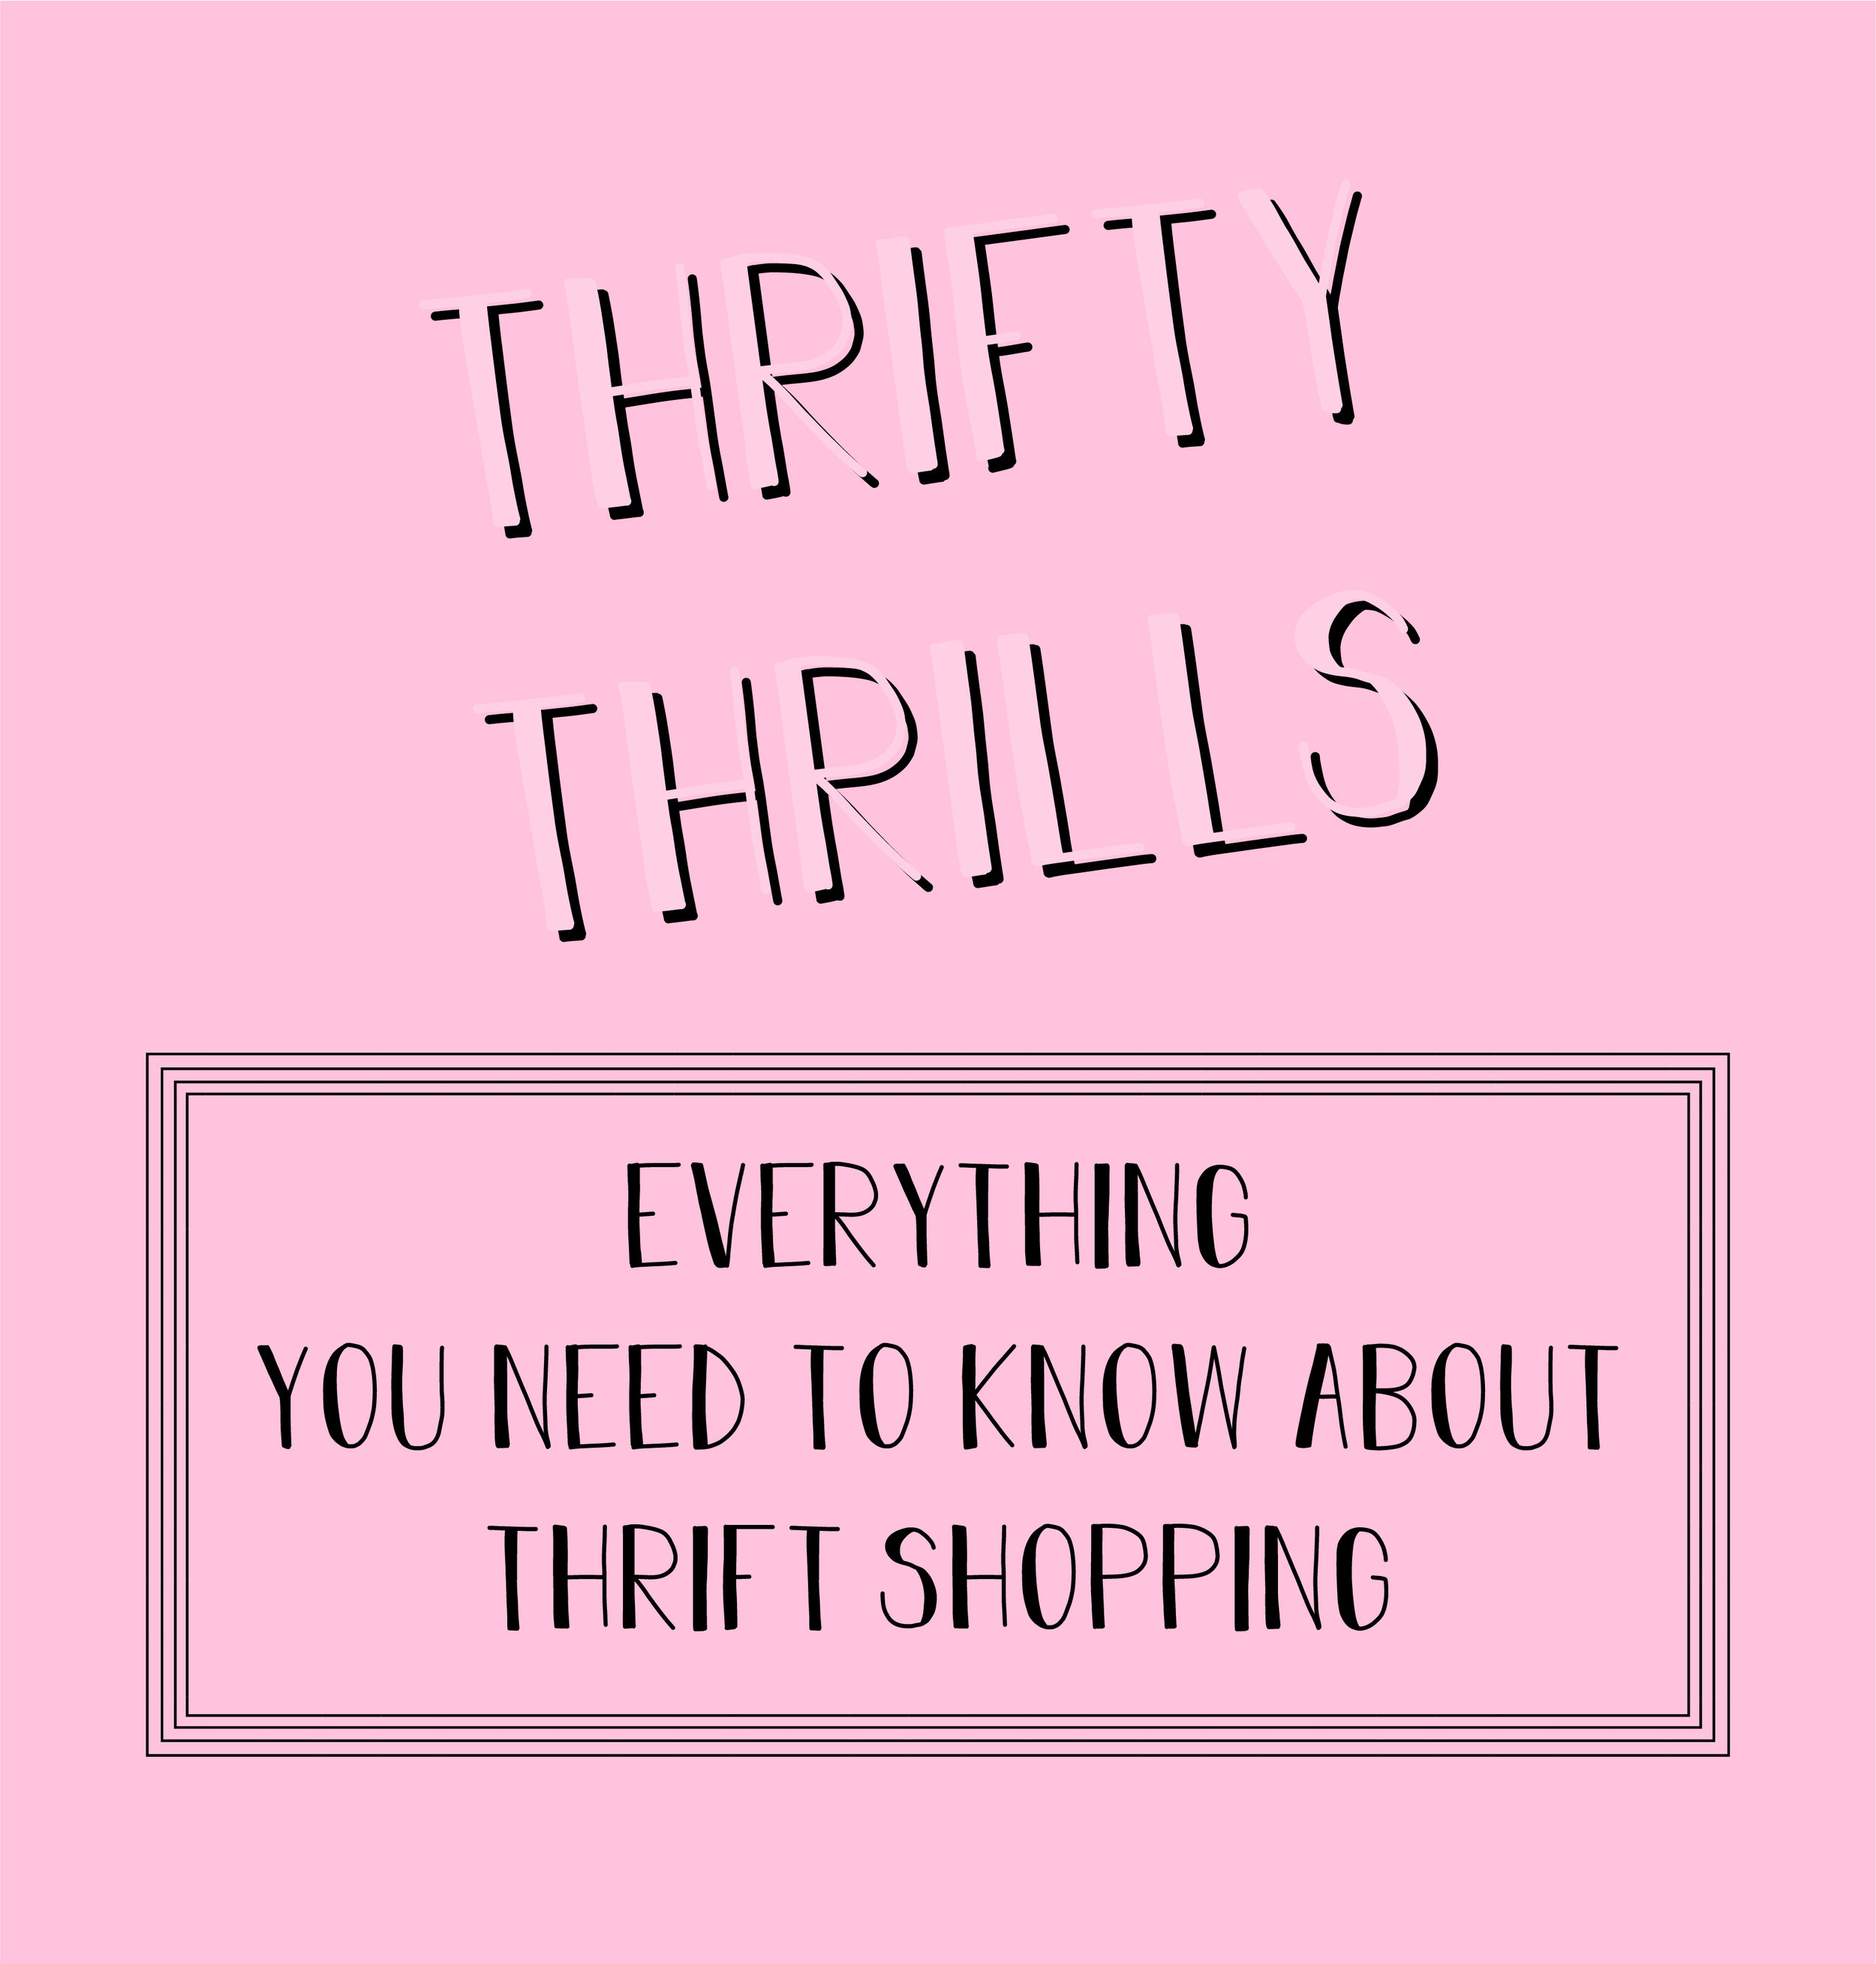 Thrifty Thrills-02 (1) (1).jpg